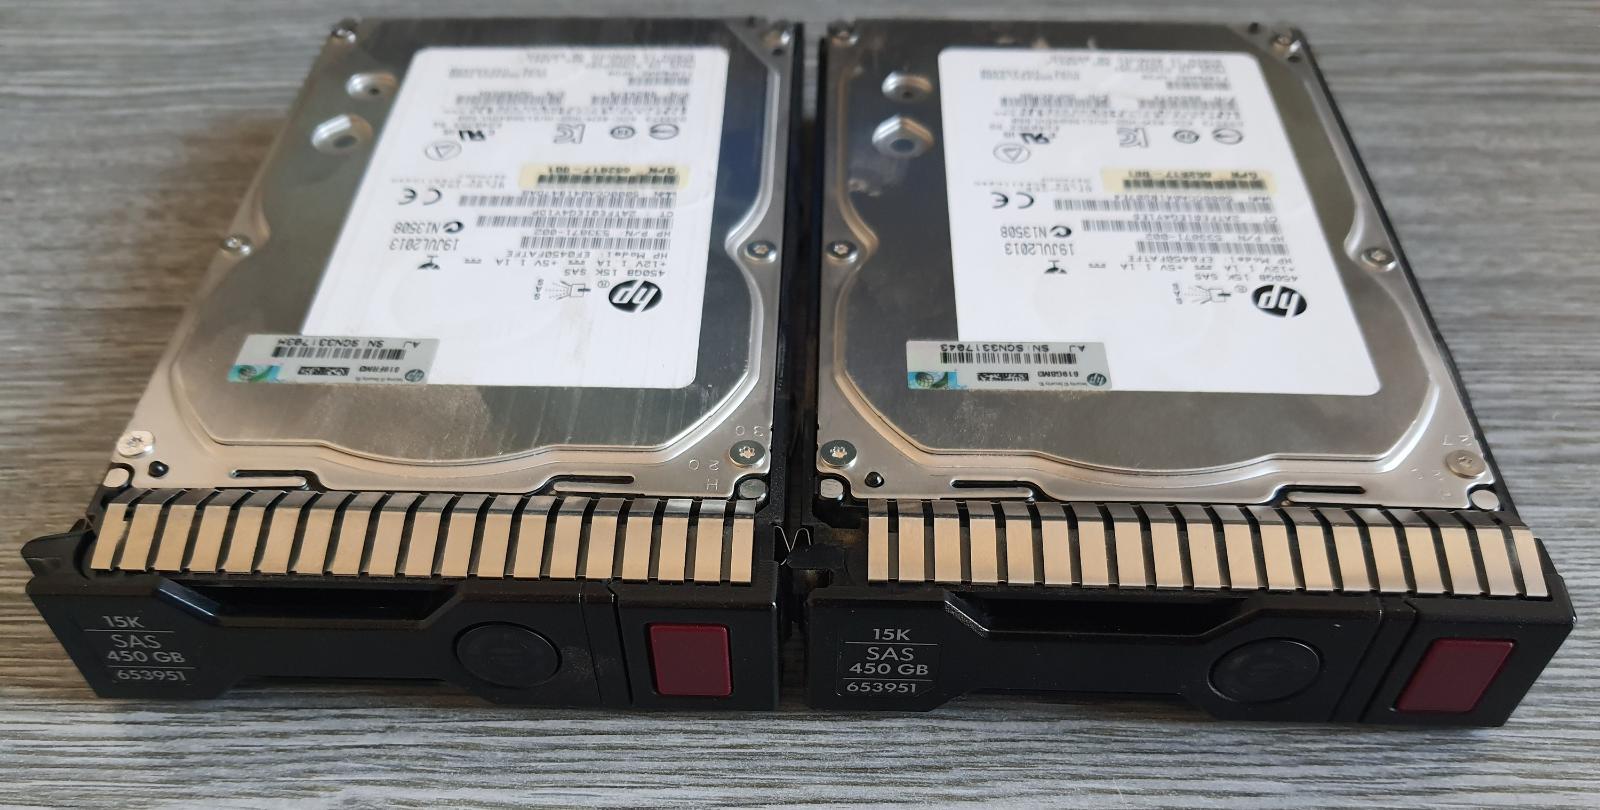 2x 450GB HDD 15k ot HP serverový disk - Počítače a hry